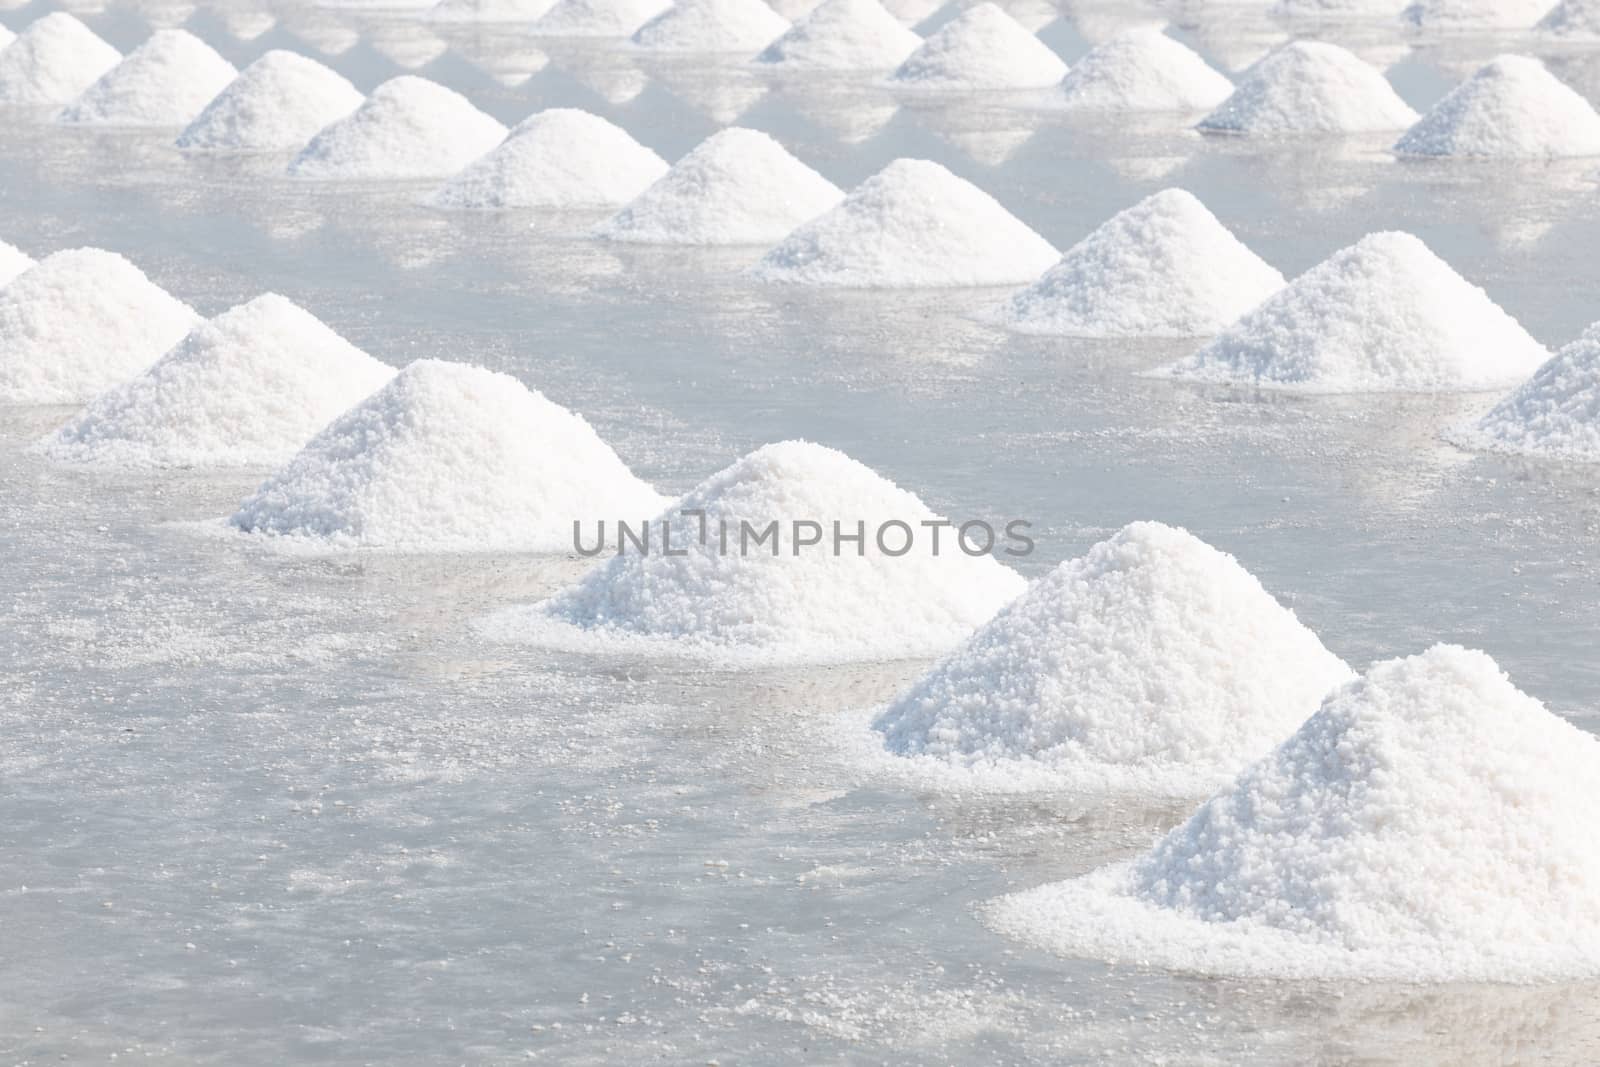 Heap of sea salt in salt farm ready for harvest,  Thailand.